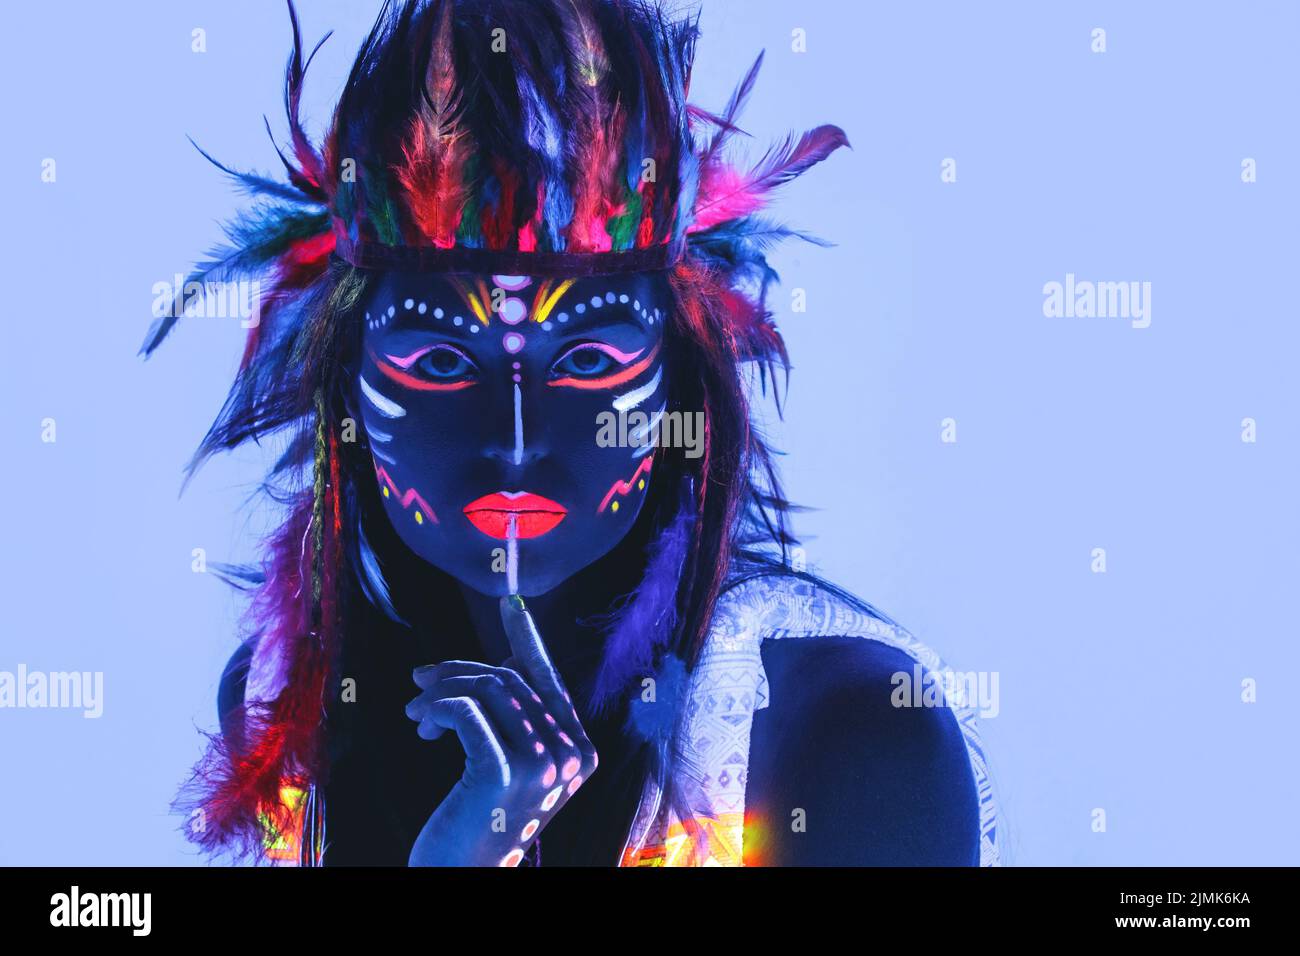 Modèle à l'image de Native american avec maquillage au néon, qui fait de peinture fluorescente dans la lumière ultraviolette. Banque D'Images